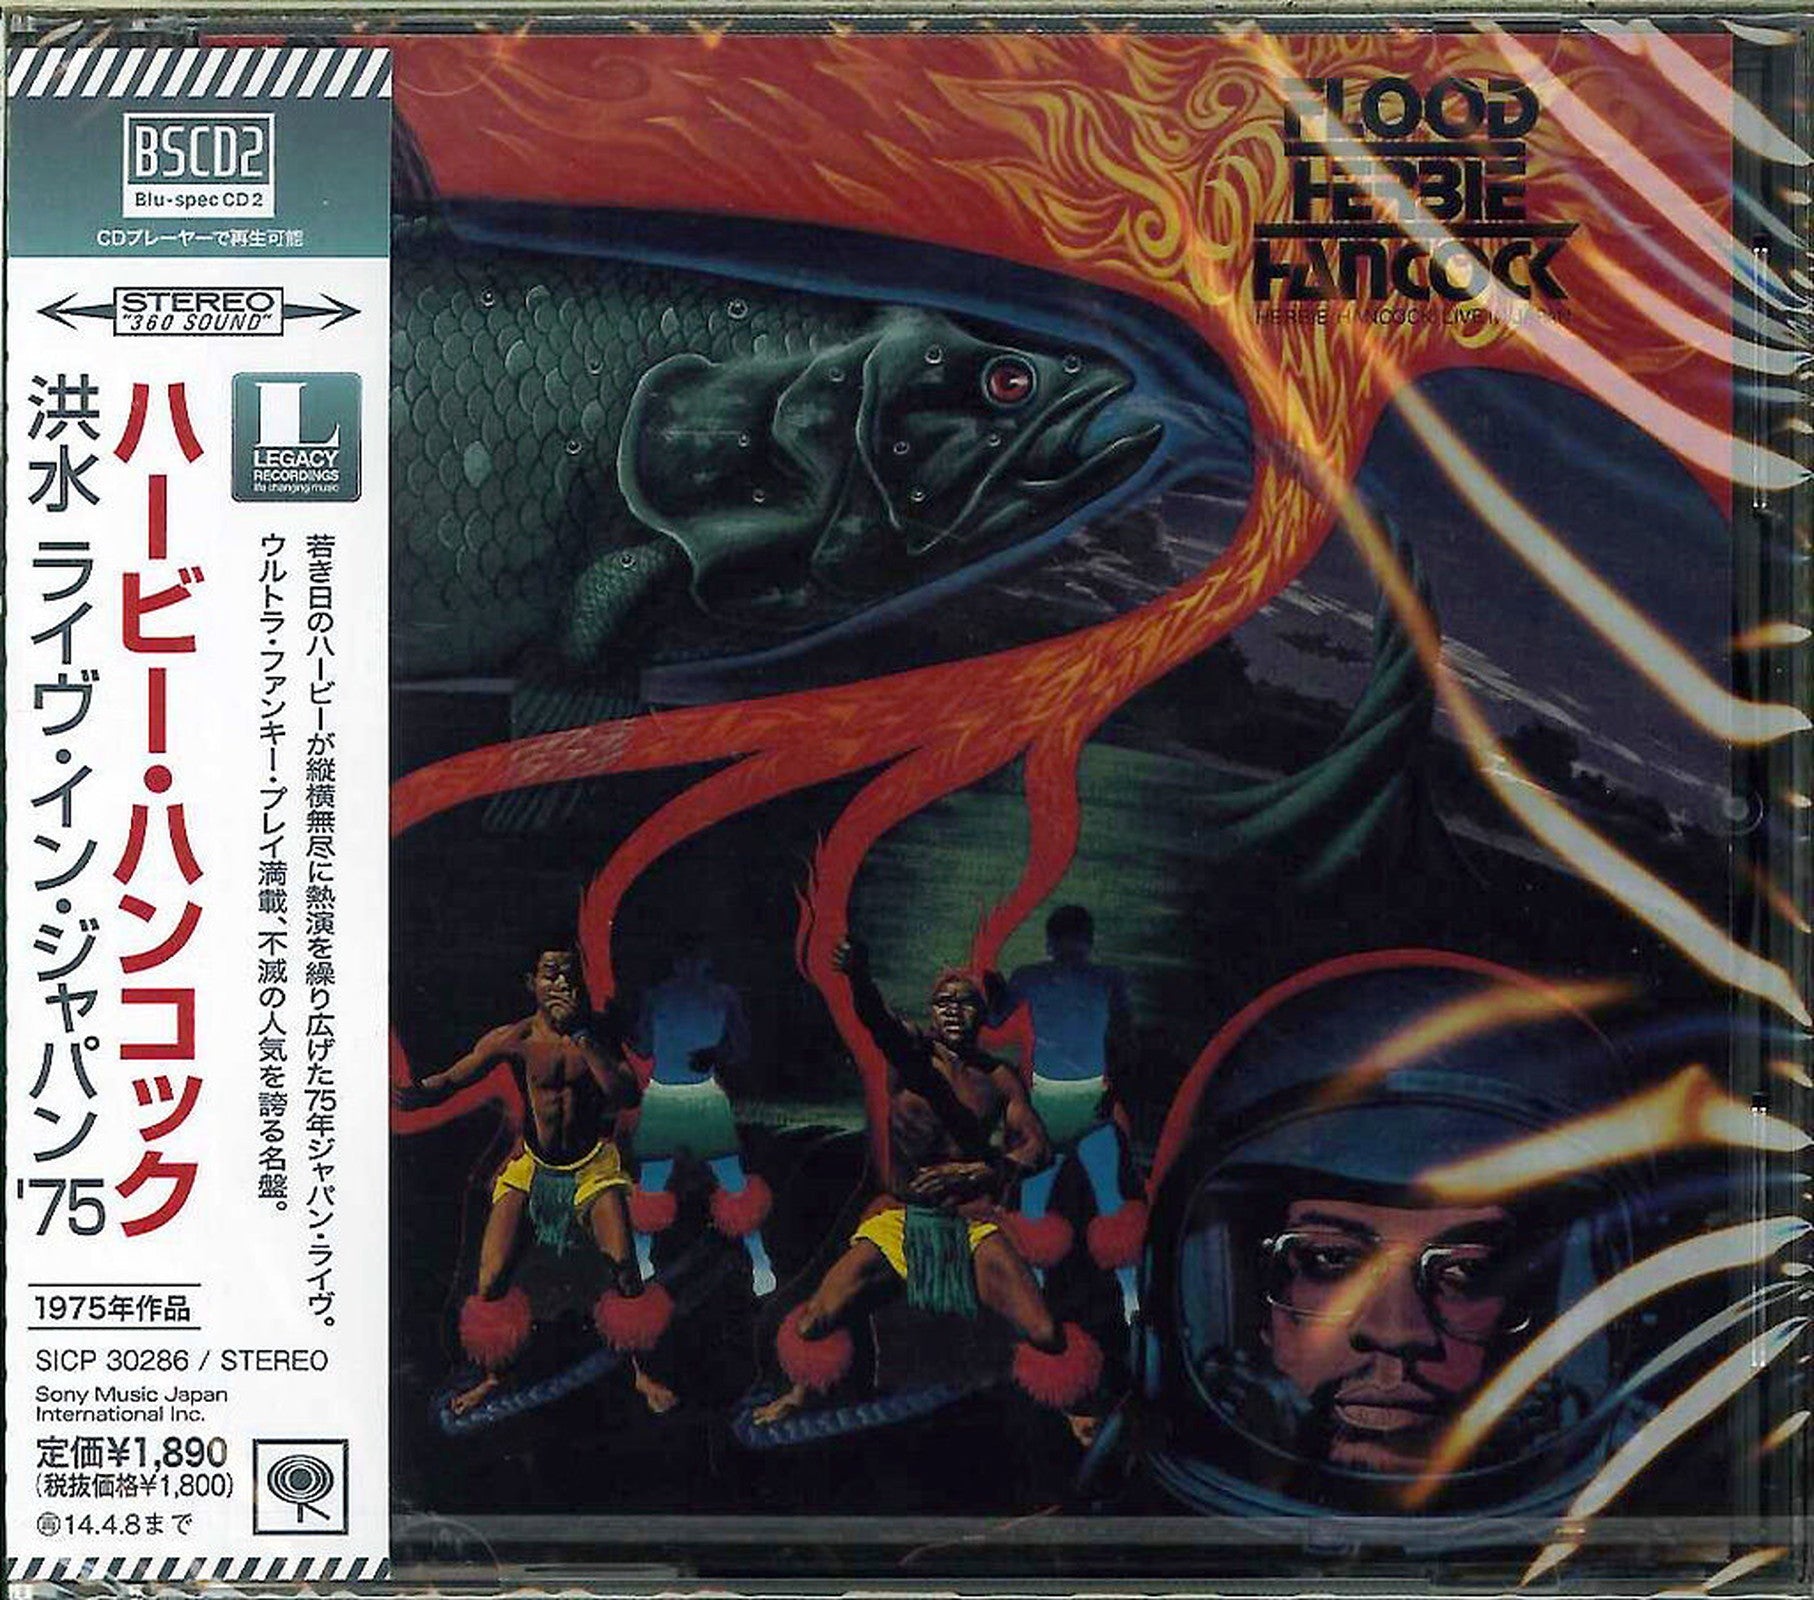 Herbie Hancock - Flood - Japan Blu-spec CD2 – CDs Vinyl Japan Store